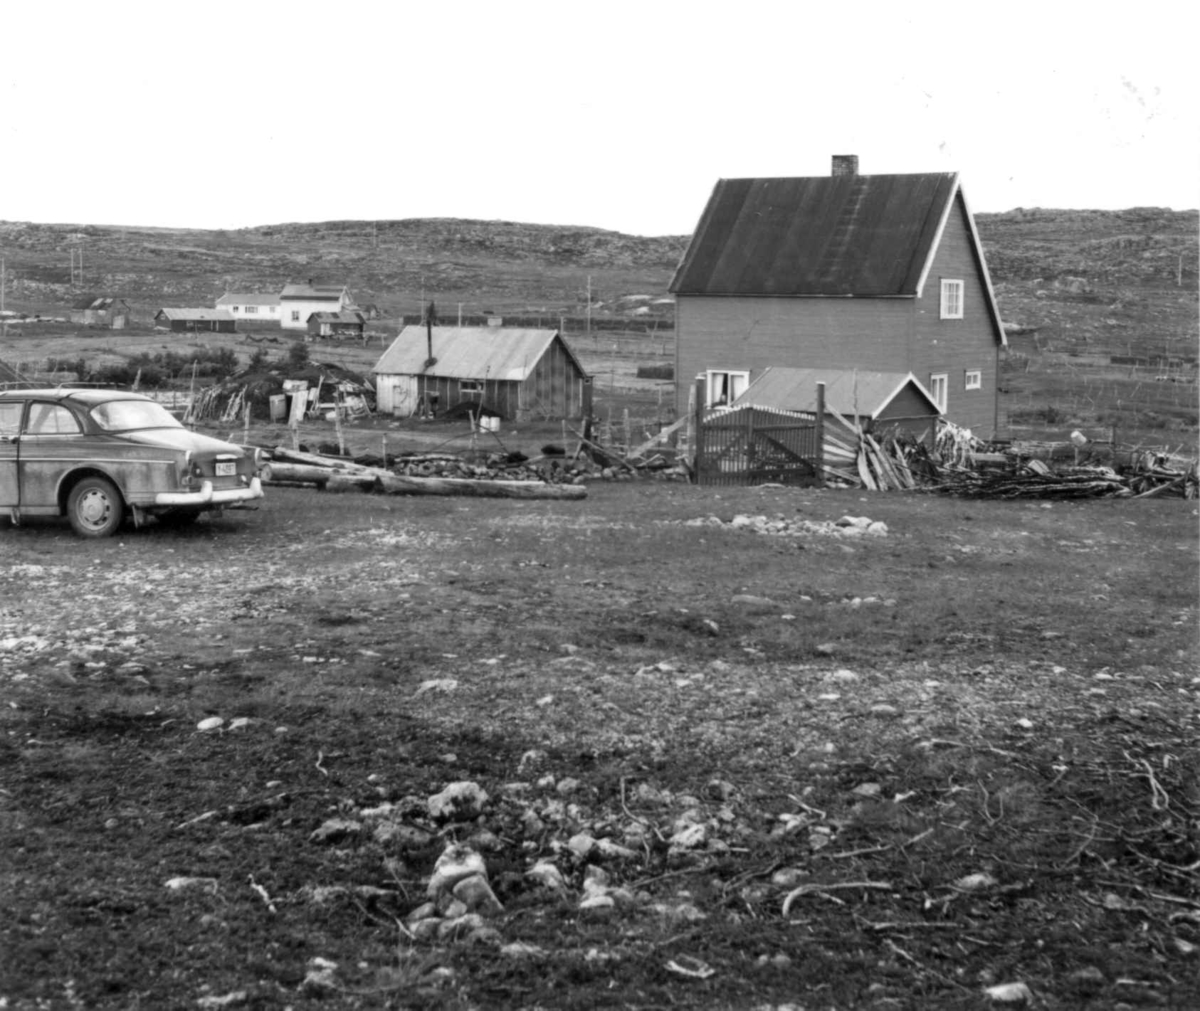 Gård med bolig og uthus, en bil står utenfor, Karlebotn 1968.